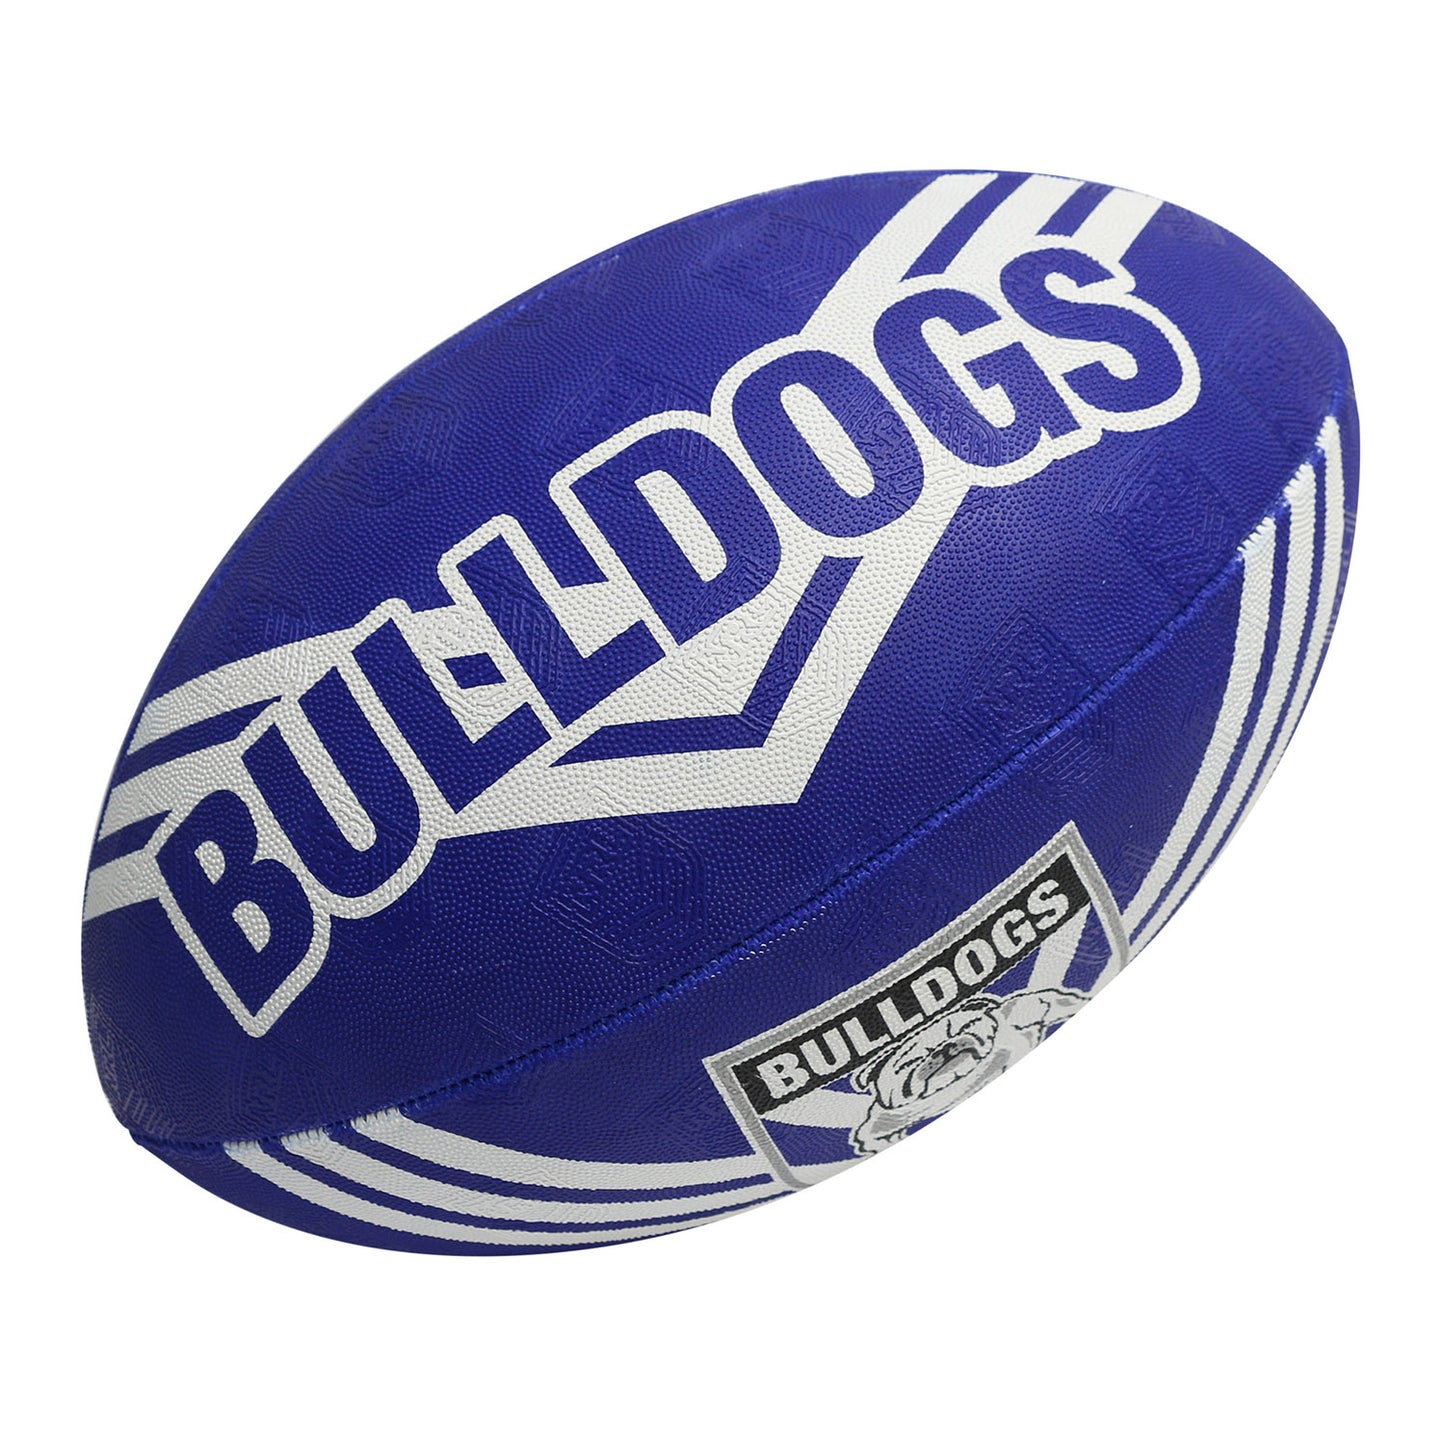 Canterbury-Bankstown Bulldogs Supporter Ball